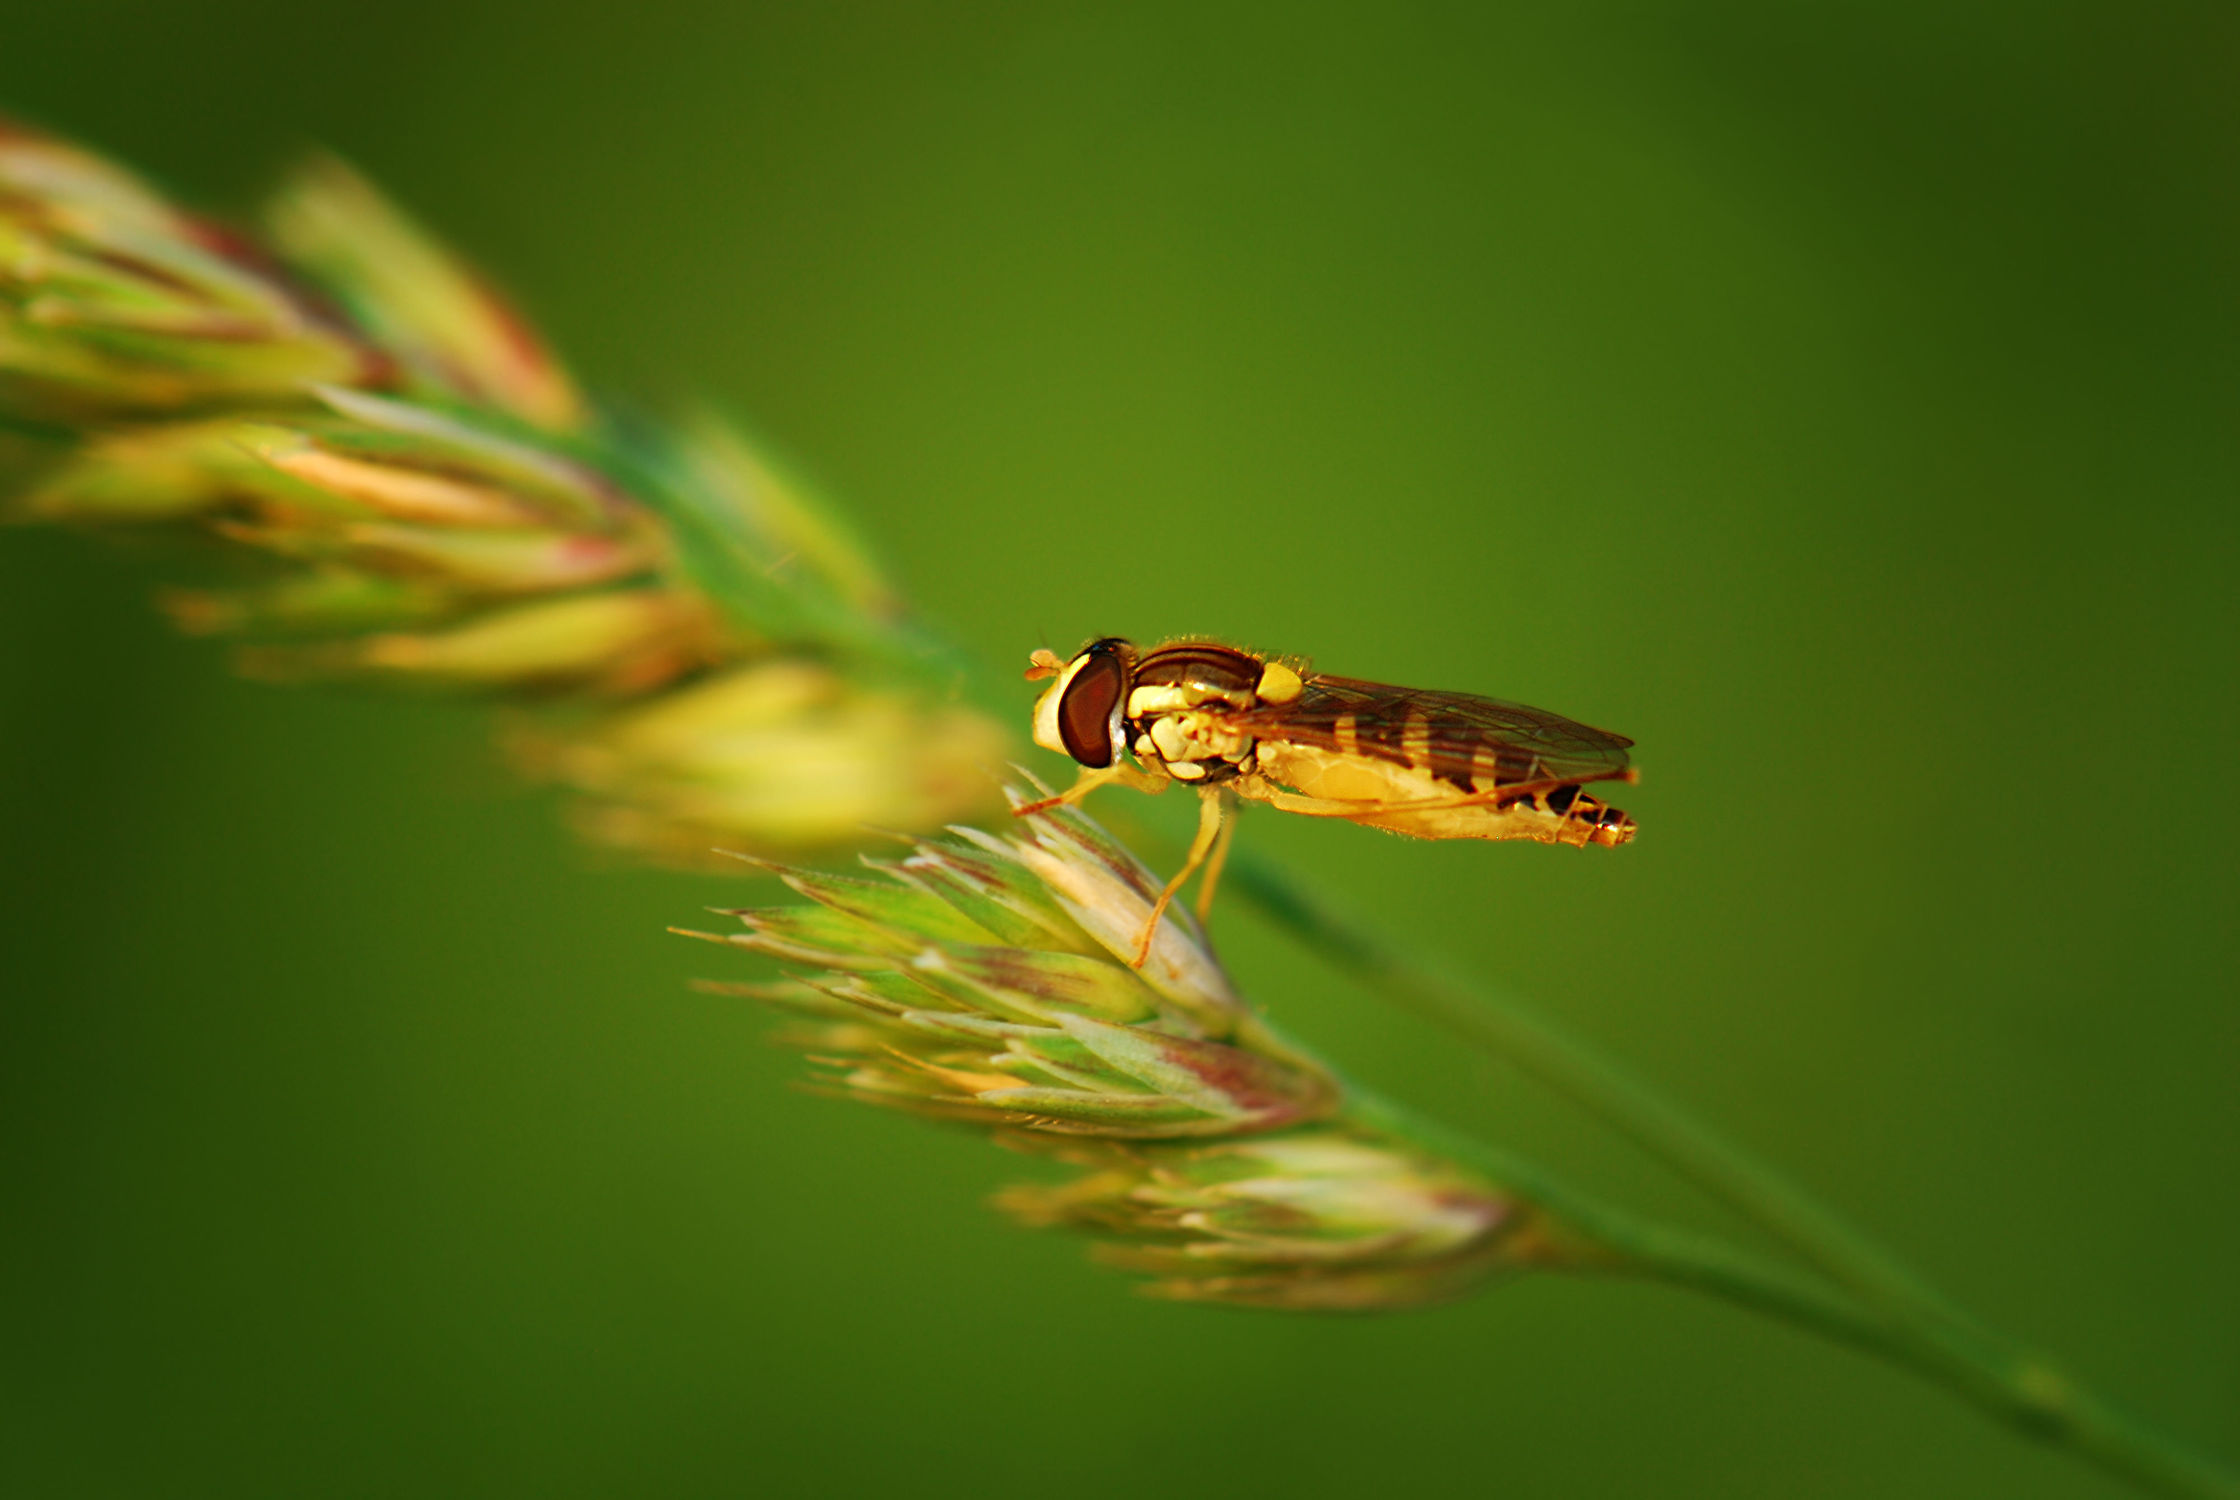 Bild mit Gelb, Grün, Insekten, Fliegen, Makroaufnahme, Pflanze, Makro, Gras, garten, nahaufnahme, Insekt, Fliege, Korn, facettenauge, nektarsuche, schwebefliege, schwebefliegen